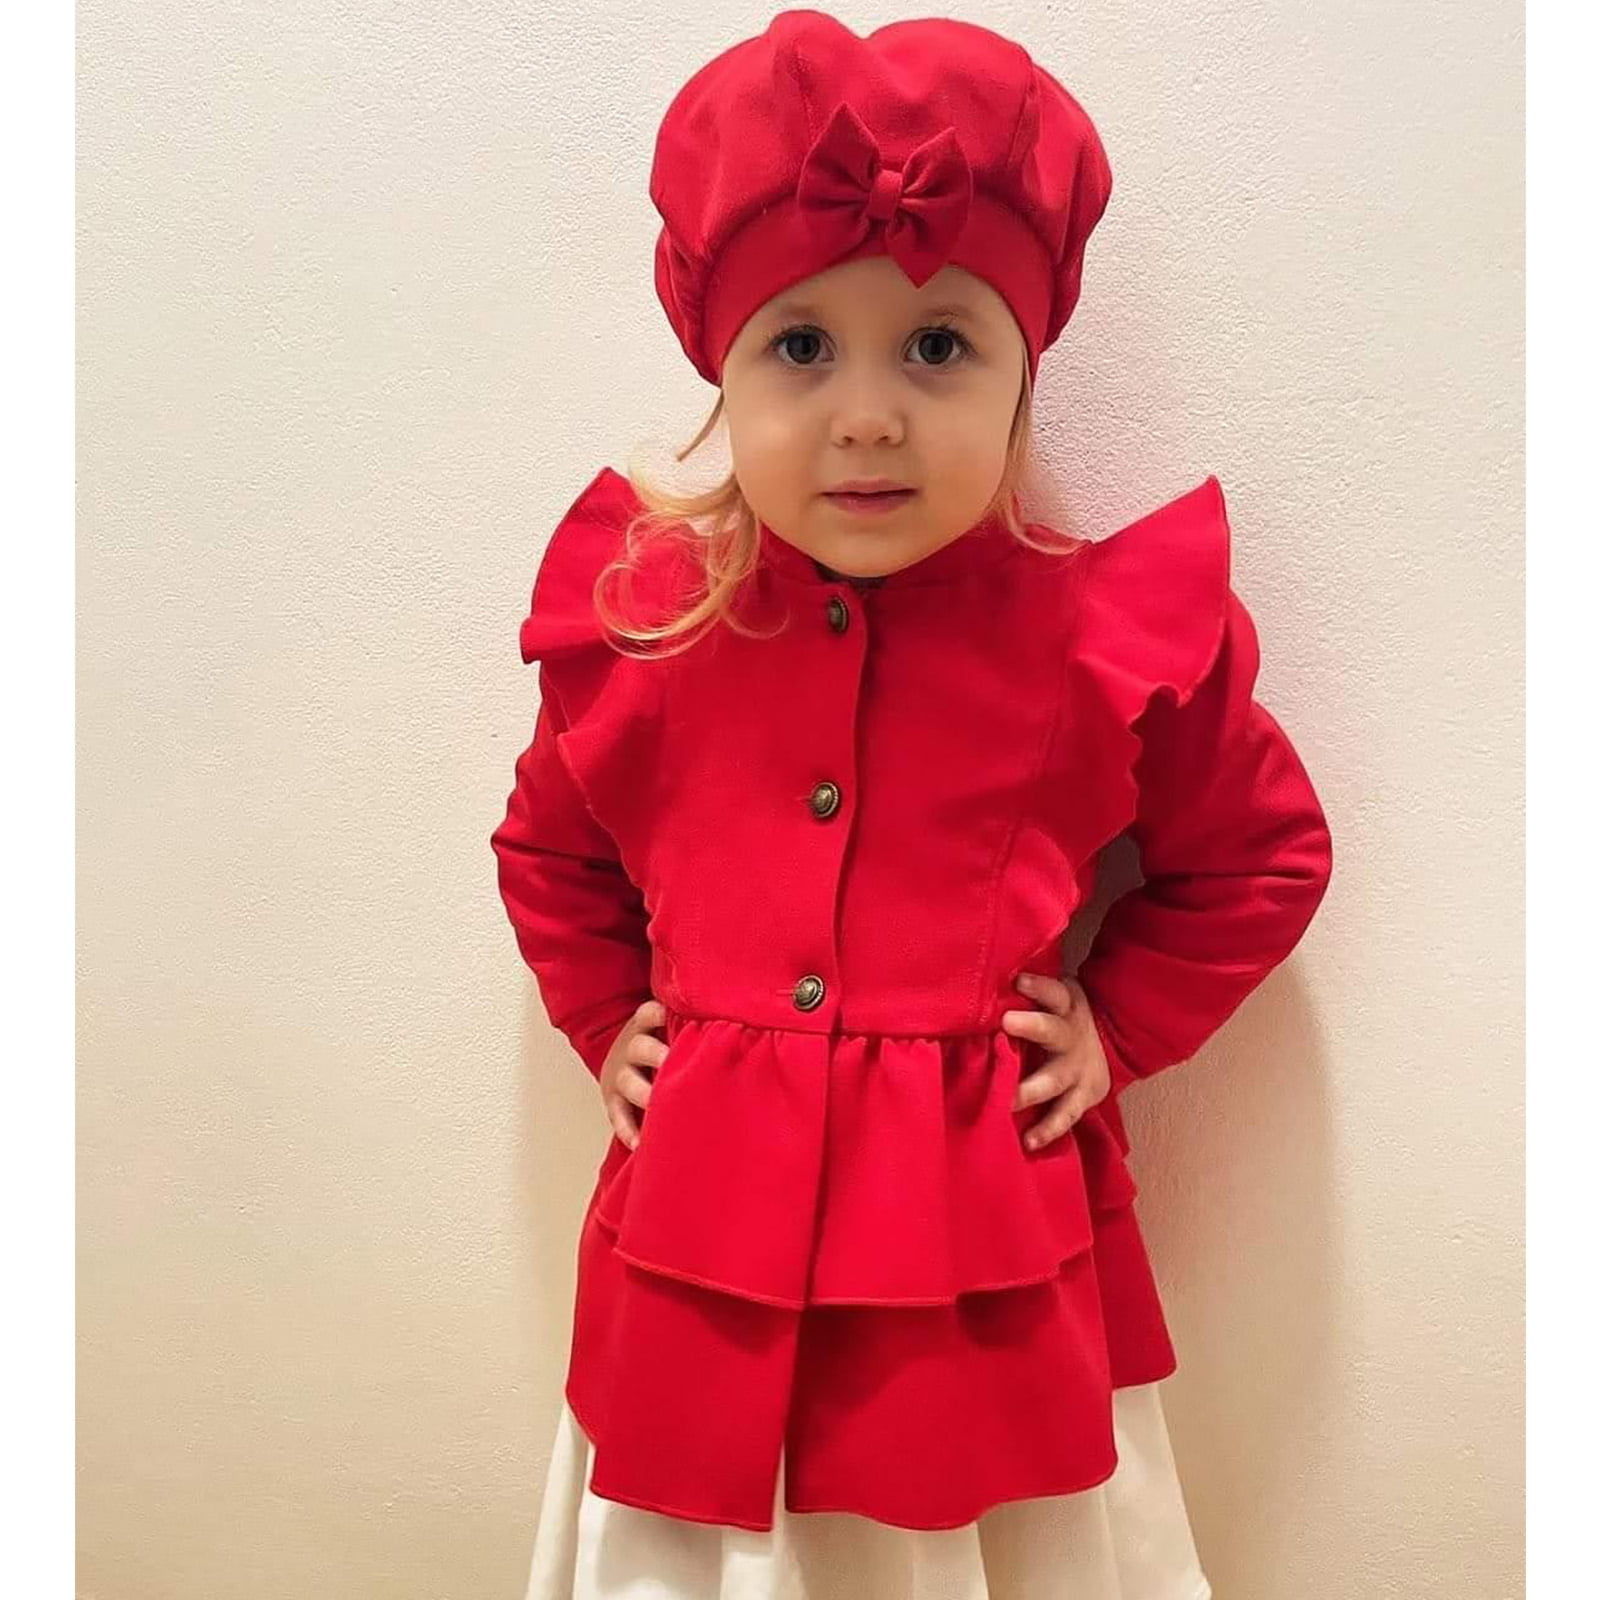 kapica i ana crvena jaknica u kompletu za djevojčice